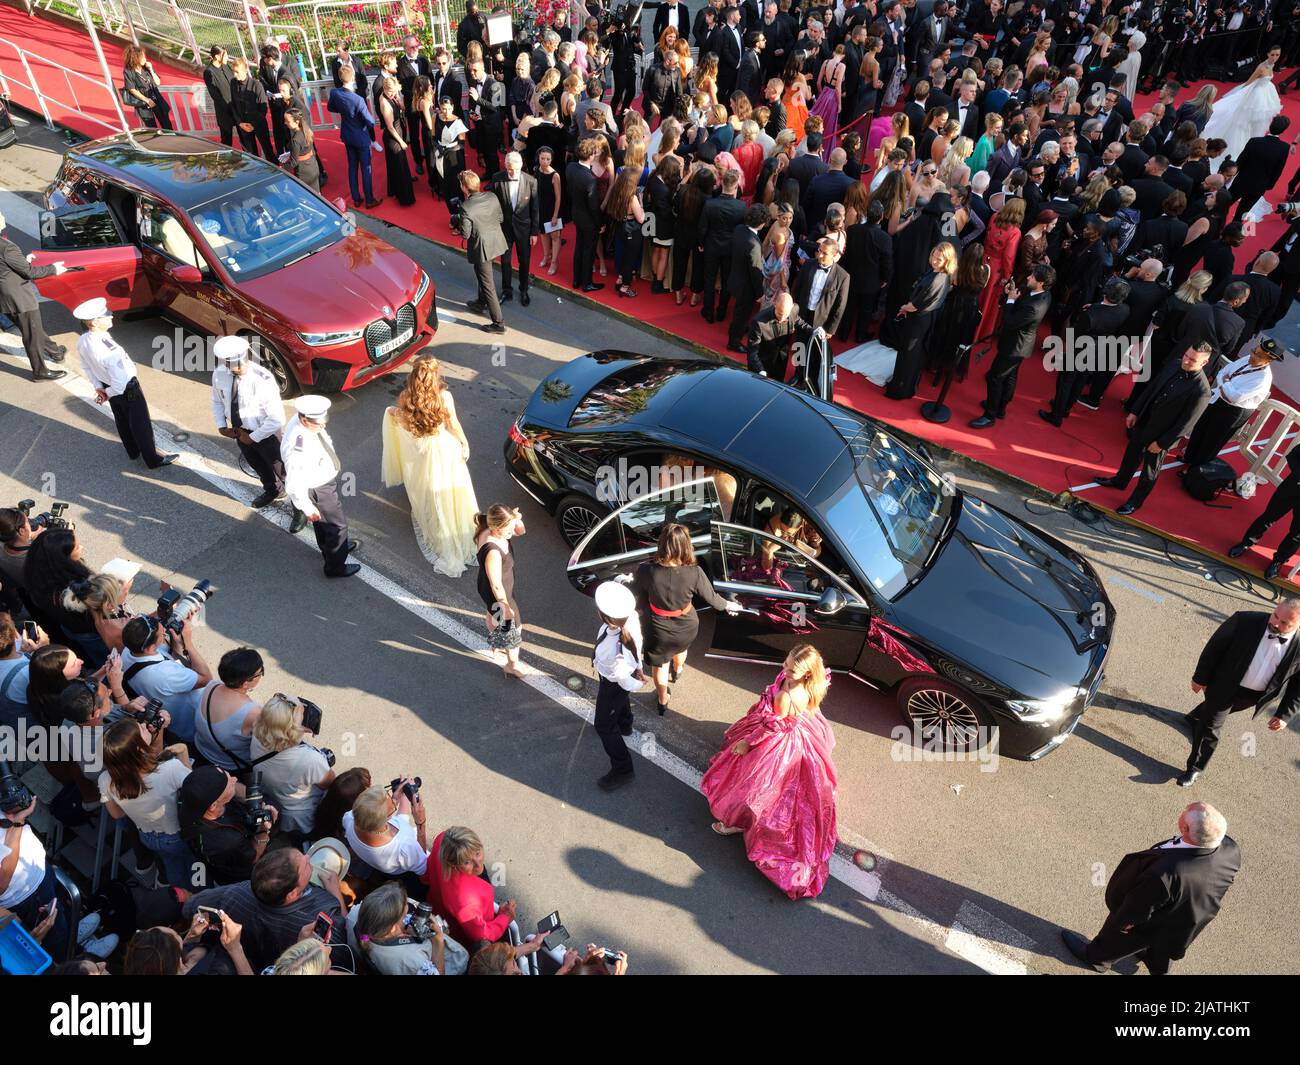 VUE AÉRIENNE depuis un mât de 6 mètres. Arrivée des gens de l'industrie cinématographique au tapis rouge du Palais des Festivals à Cannes. Côte d'Azur, France. Banque D'Images